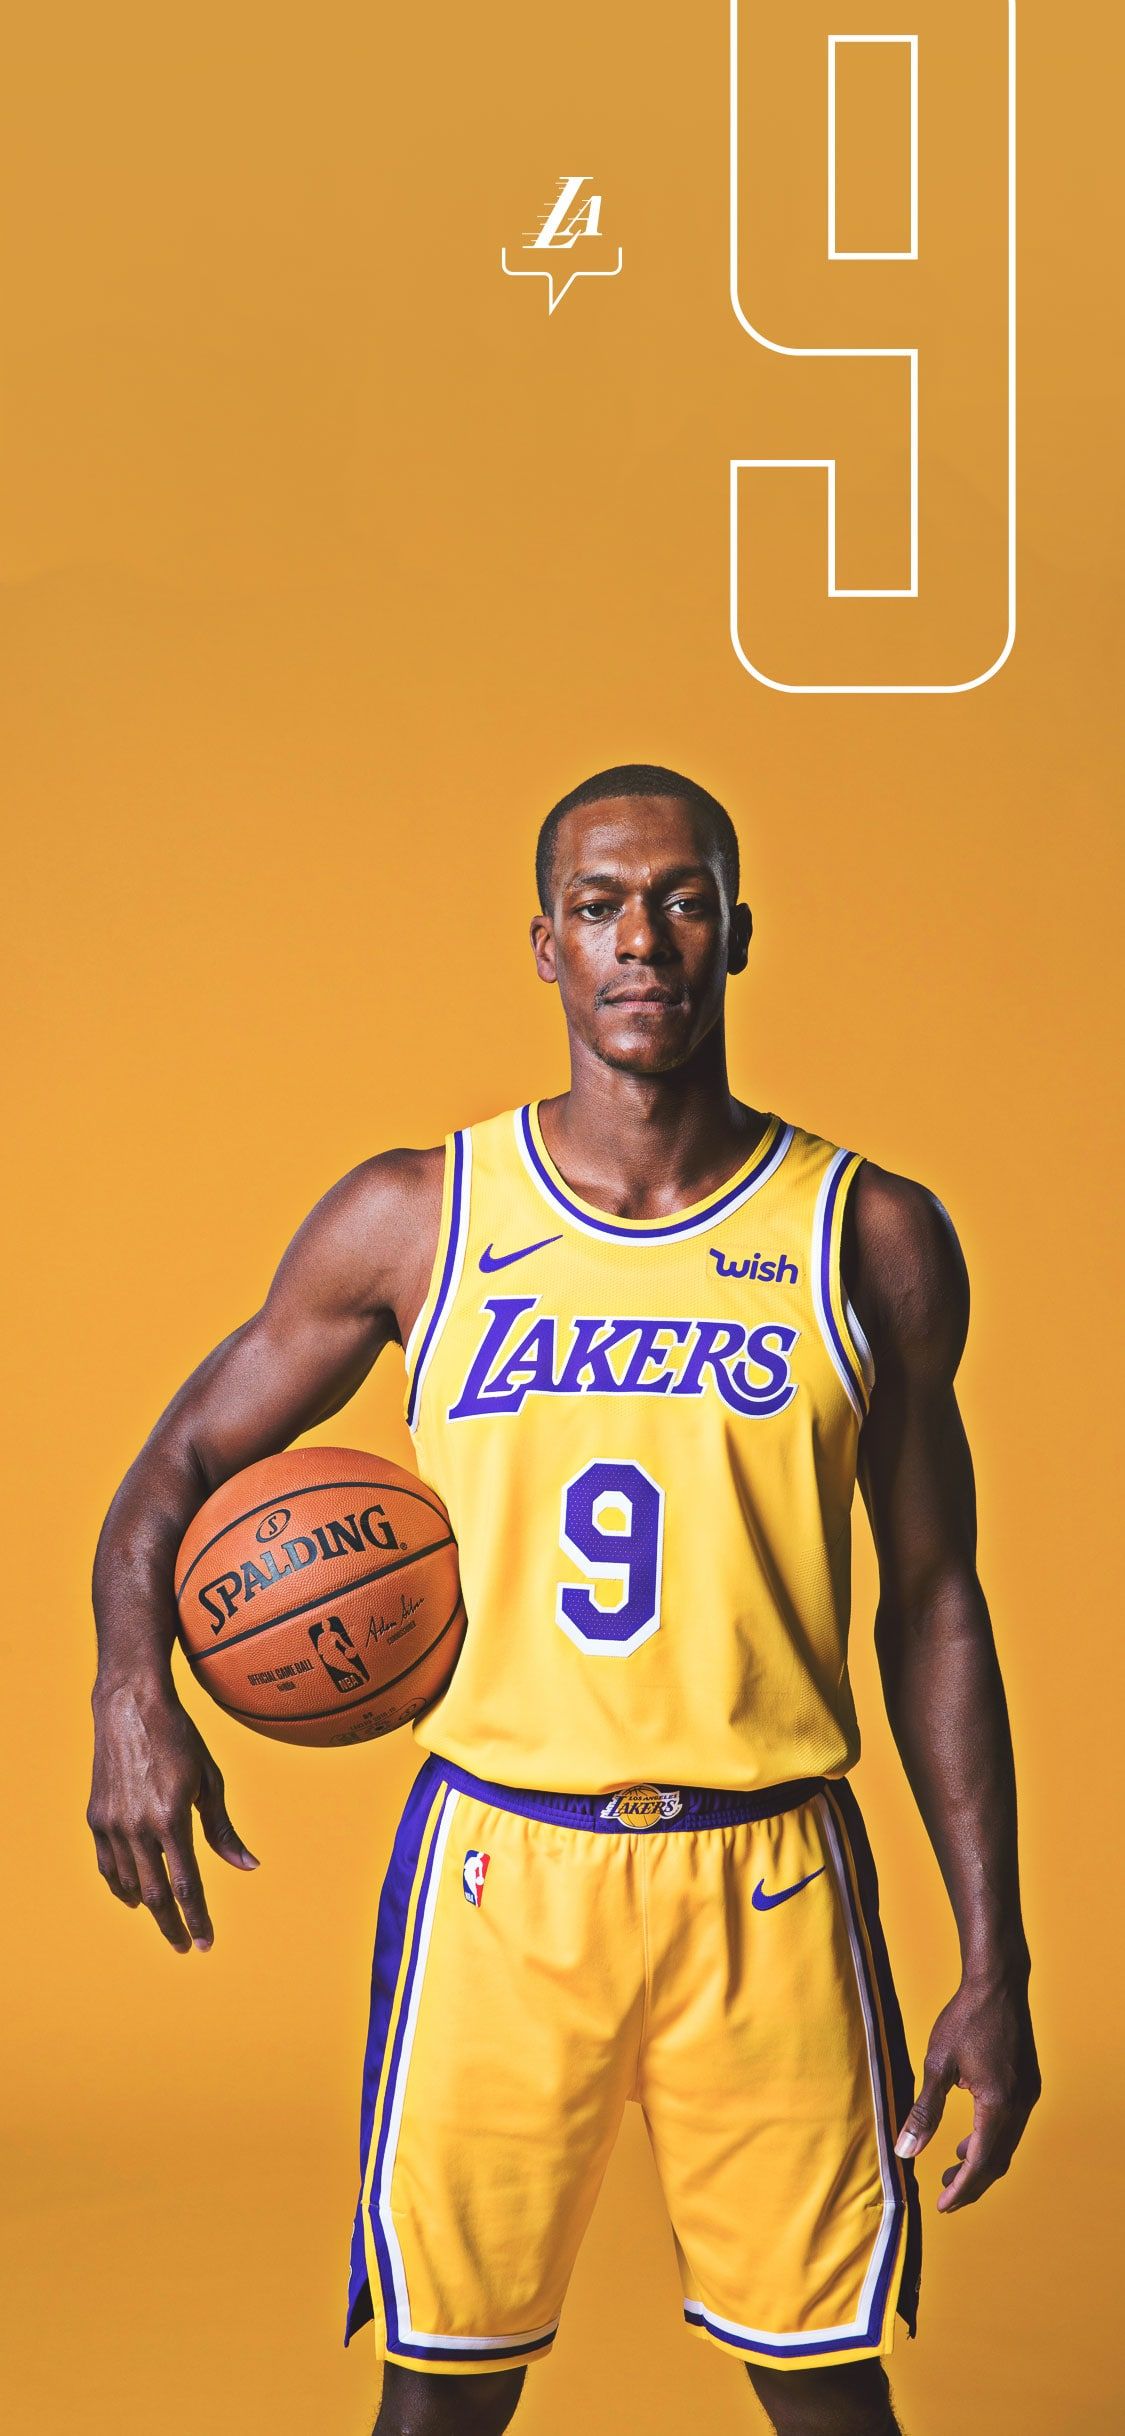 Lakers Fondos de pantalla e infografías | los Lakers de Los Angeles